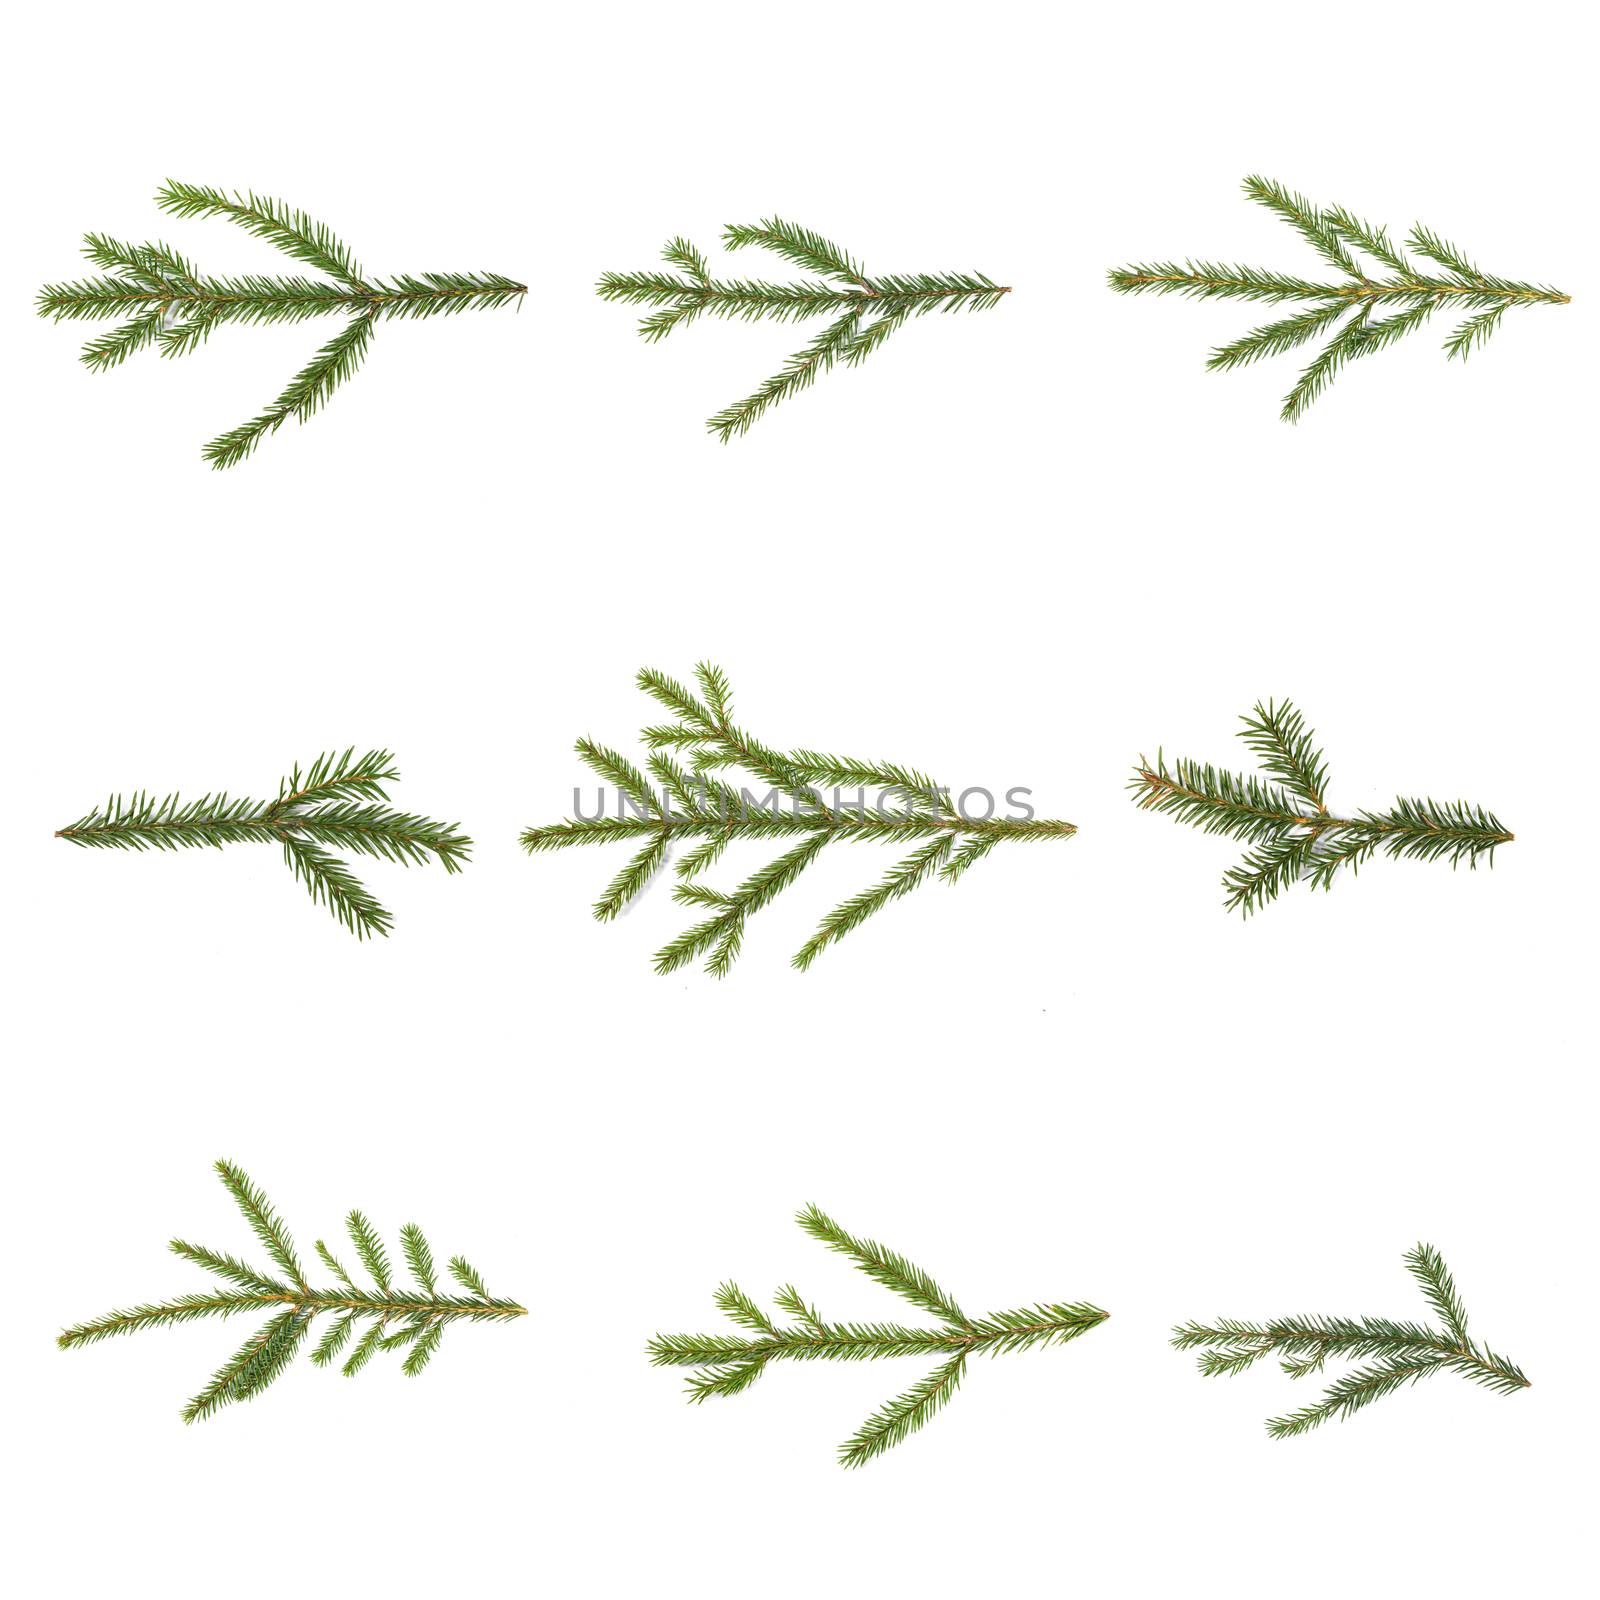 Evergreen christmas fir pine tree branch set on white for design